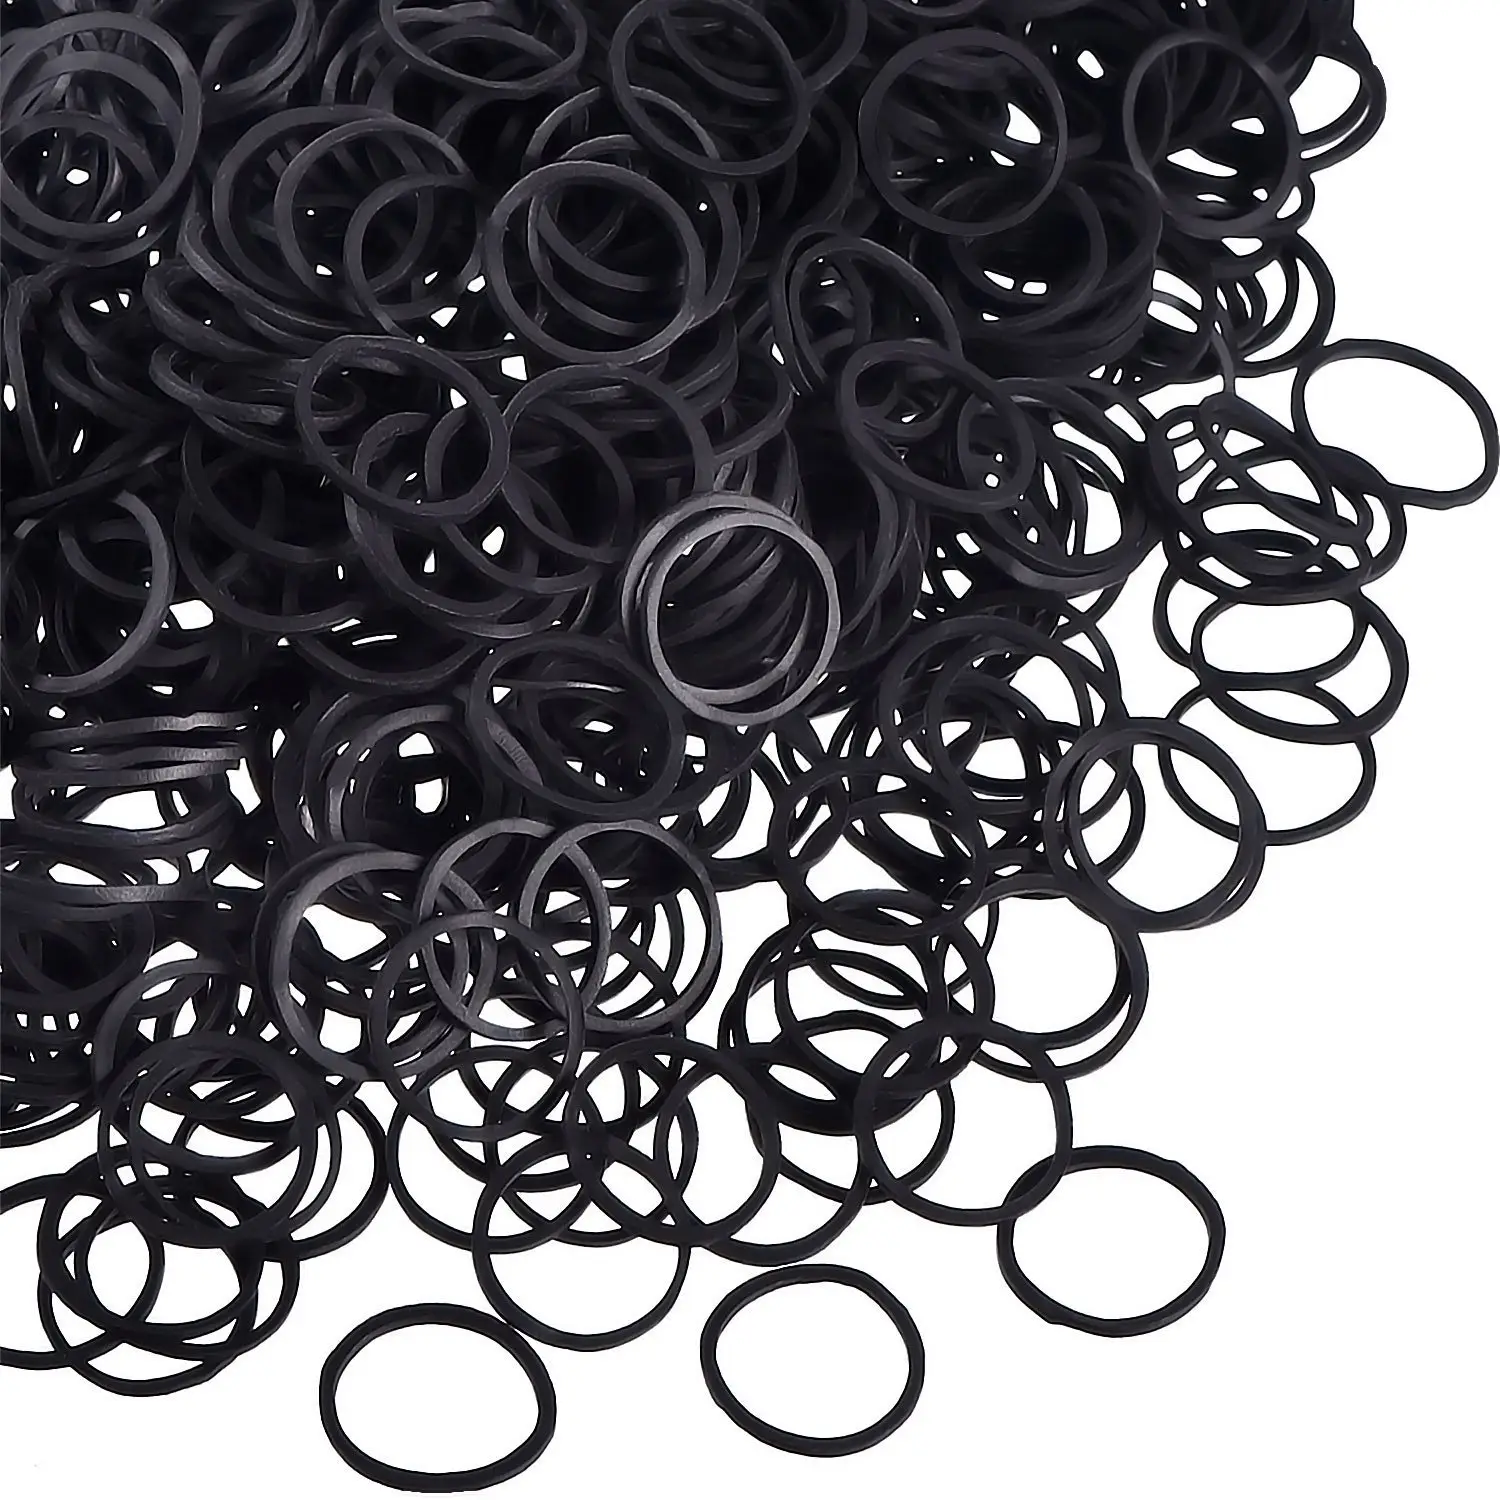 Mini faixas de borracha elásticas para cabelo, criança tranças de cabelo (preto), 1000